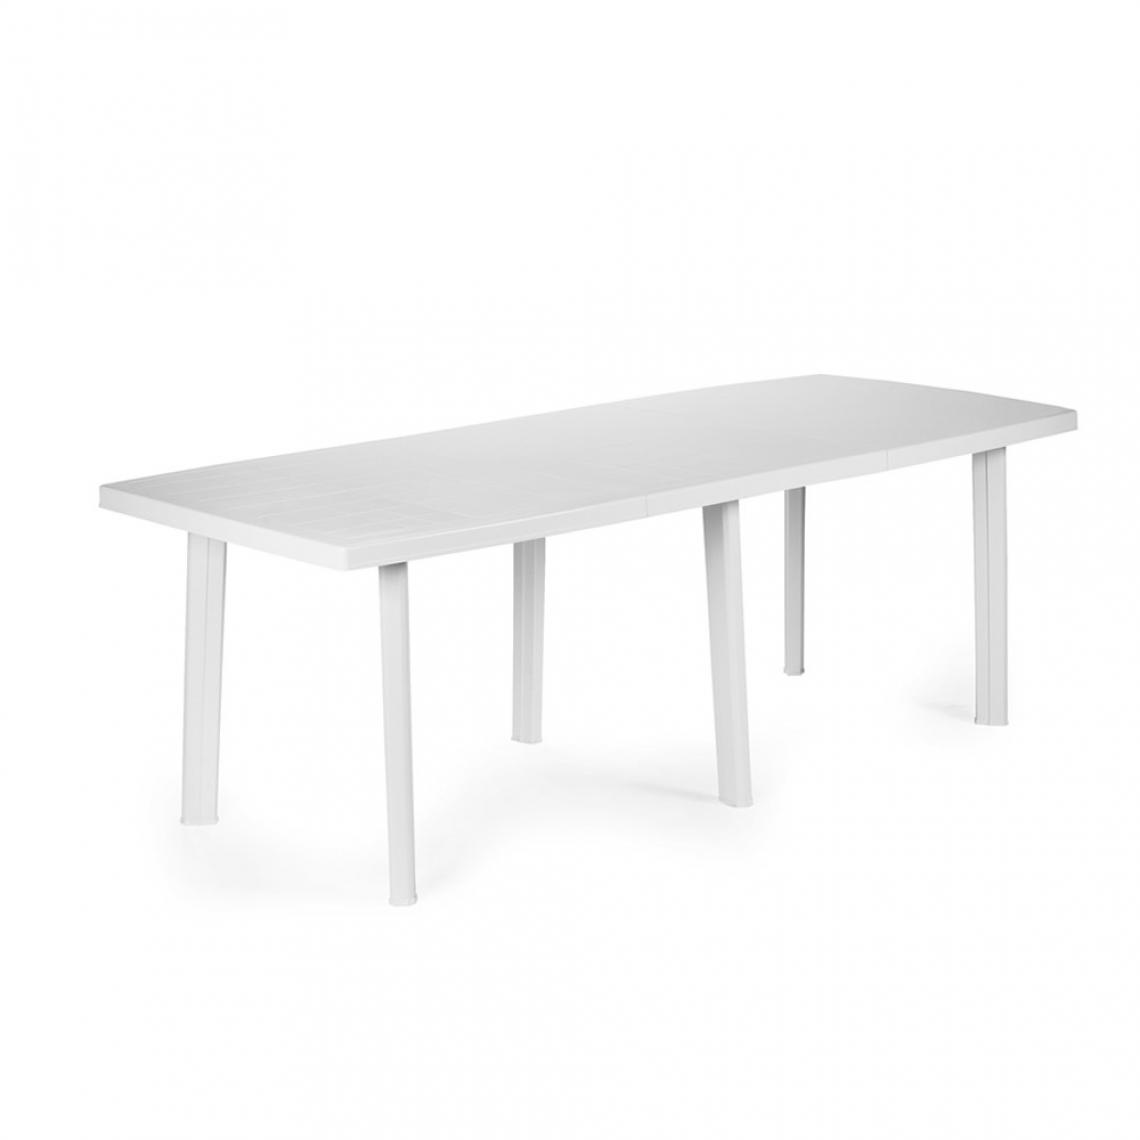 Alter - Table rectangulaire extensible, avec 6 pieds, Made in Italy, 144x90x72 cm (fermé), couleur Blanc - Tables à manger